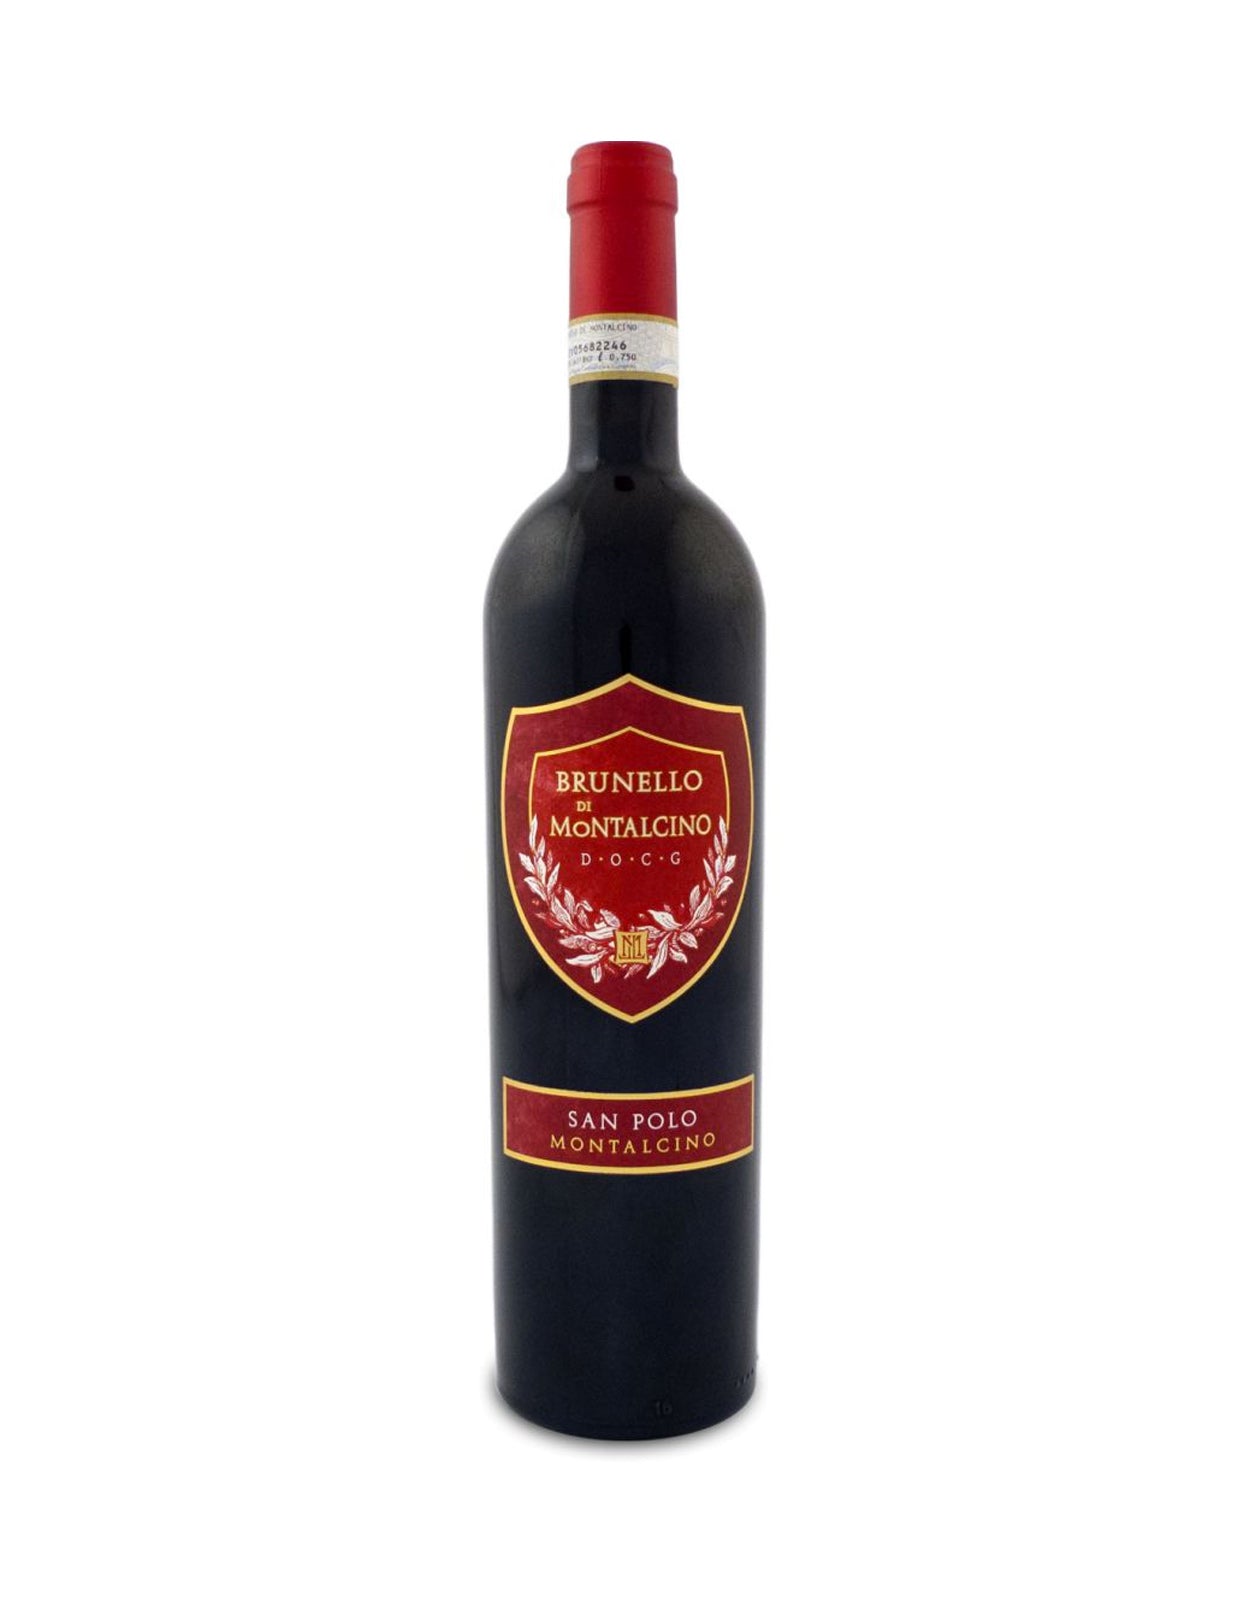 San Polo Brunello di Montalcino - 1.5 Litre Bottle